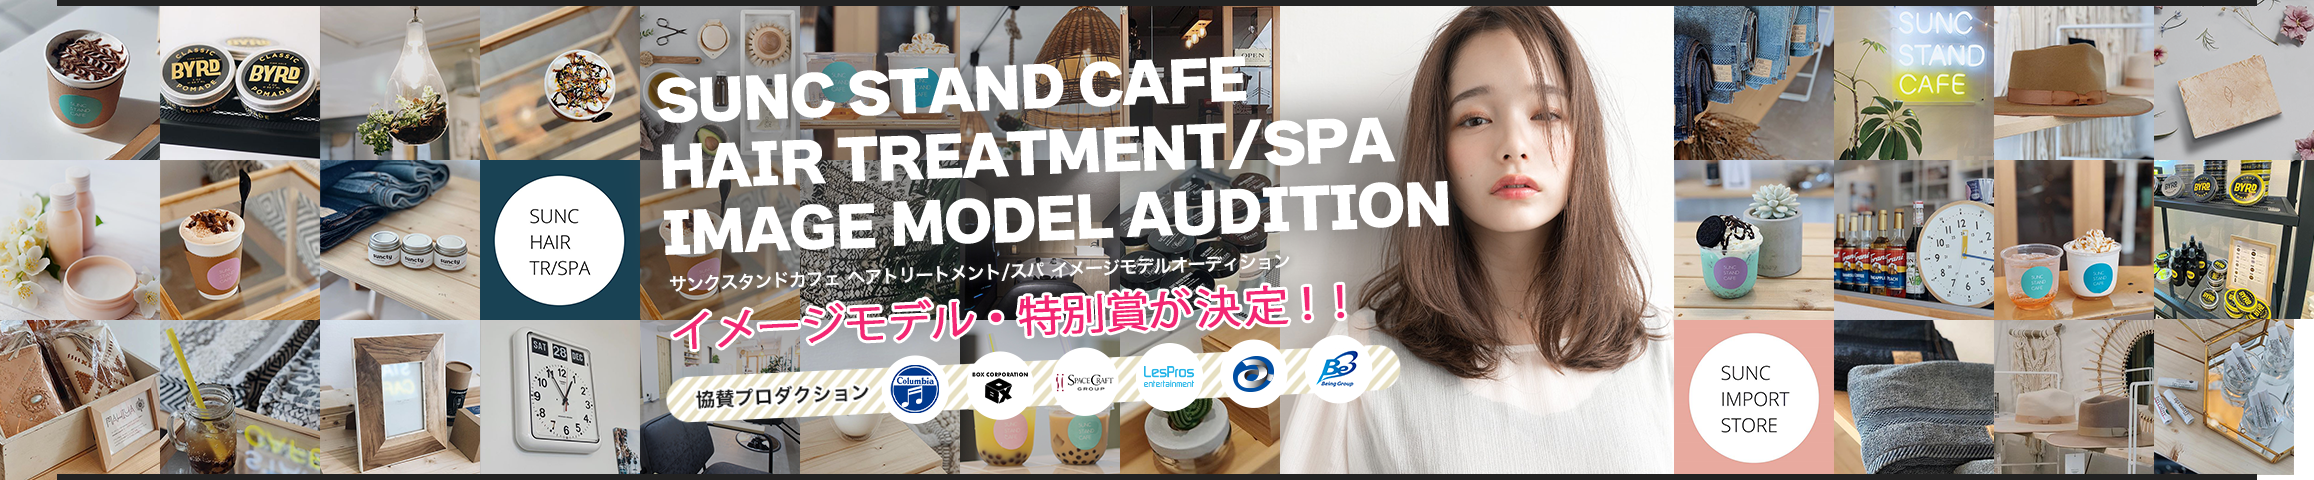 SUNC STAND CAFE HAIR TREATMENT/SPA IMAGE MODEL AUDITION サンクスタンドカフェヘアトリートメント/スパ イメージモデルオーディション イメージモデル・特別賞が決定！！